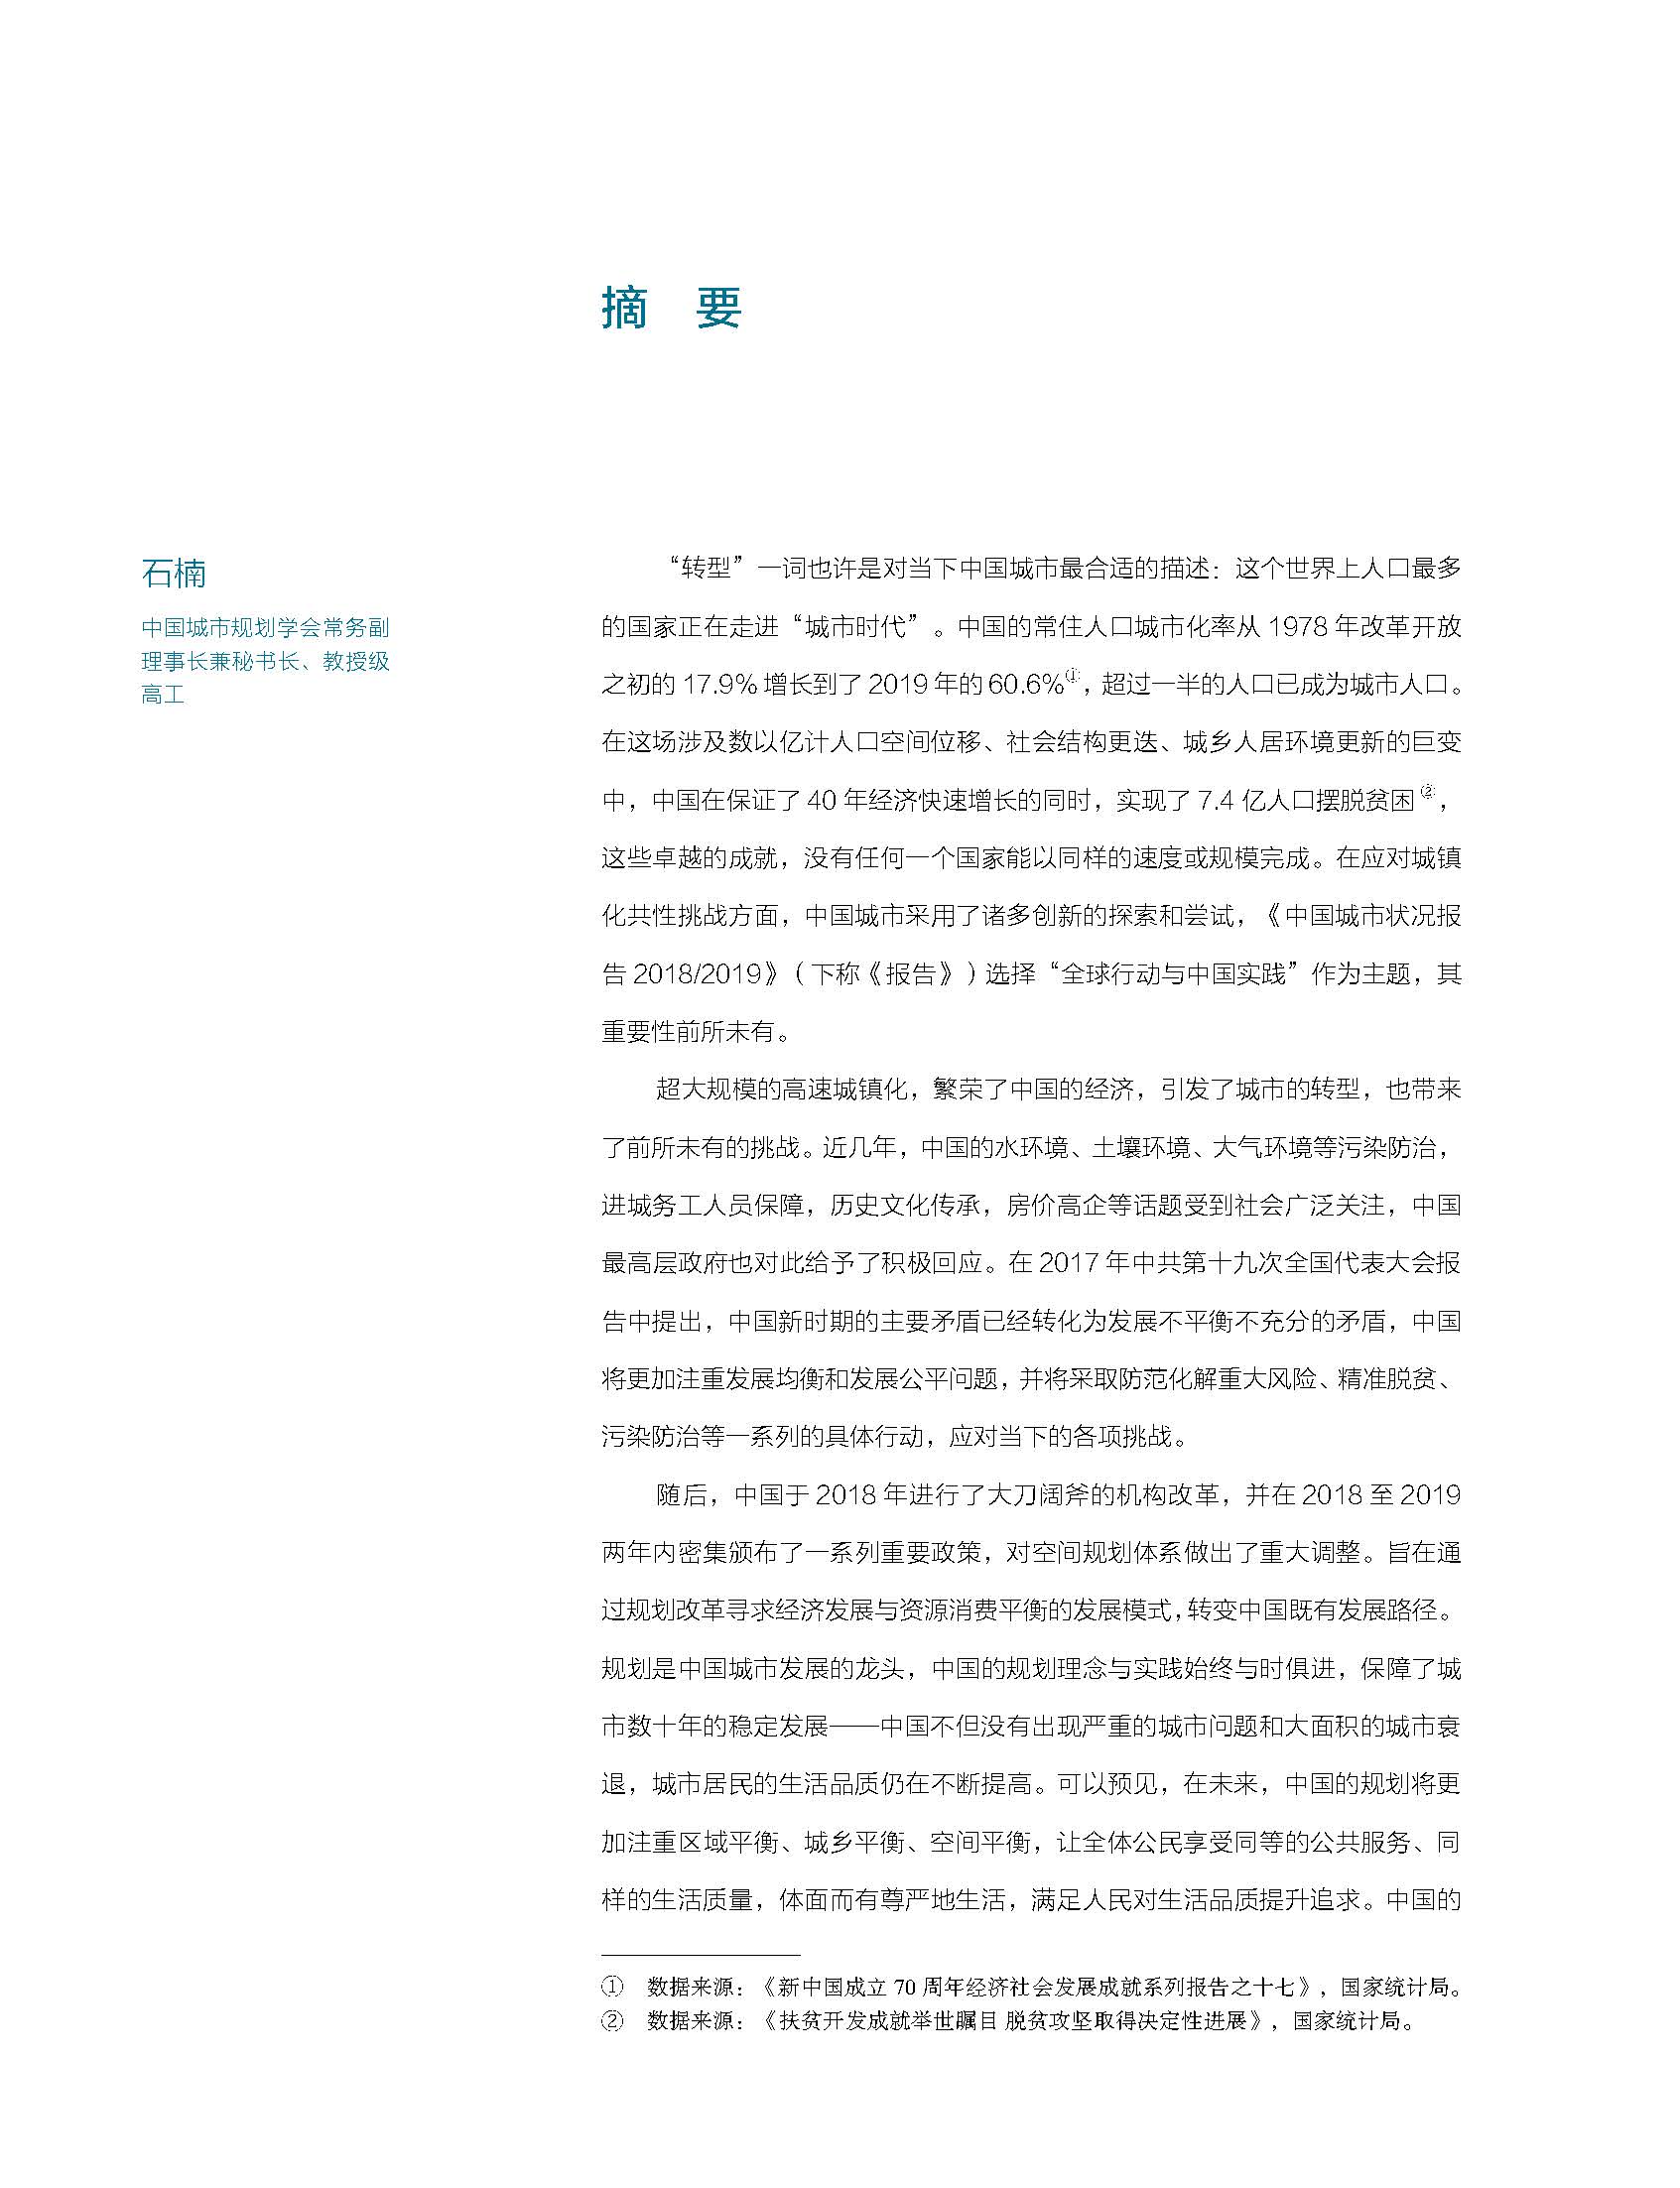 状况报告2018-2019中文 8.jpg